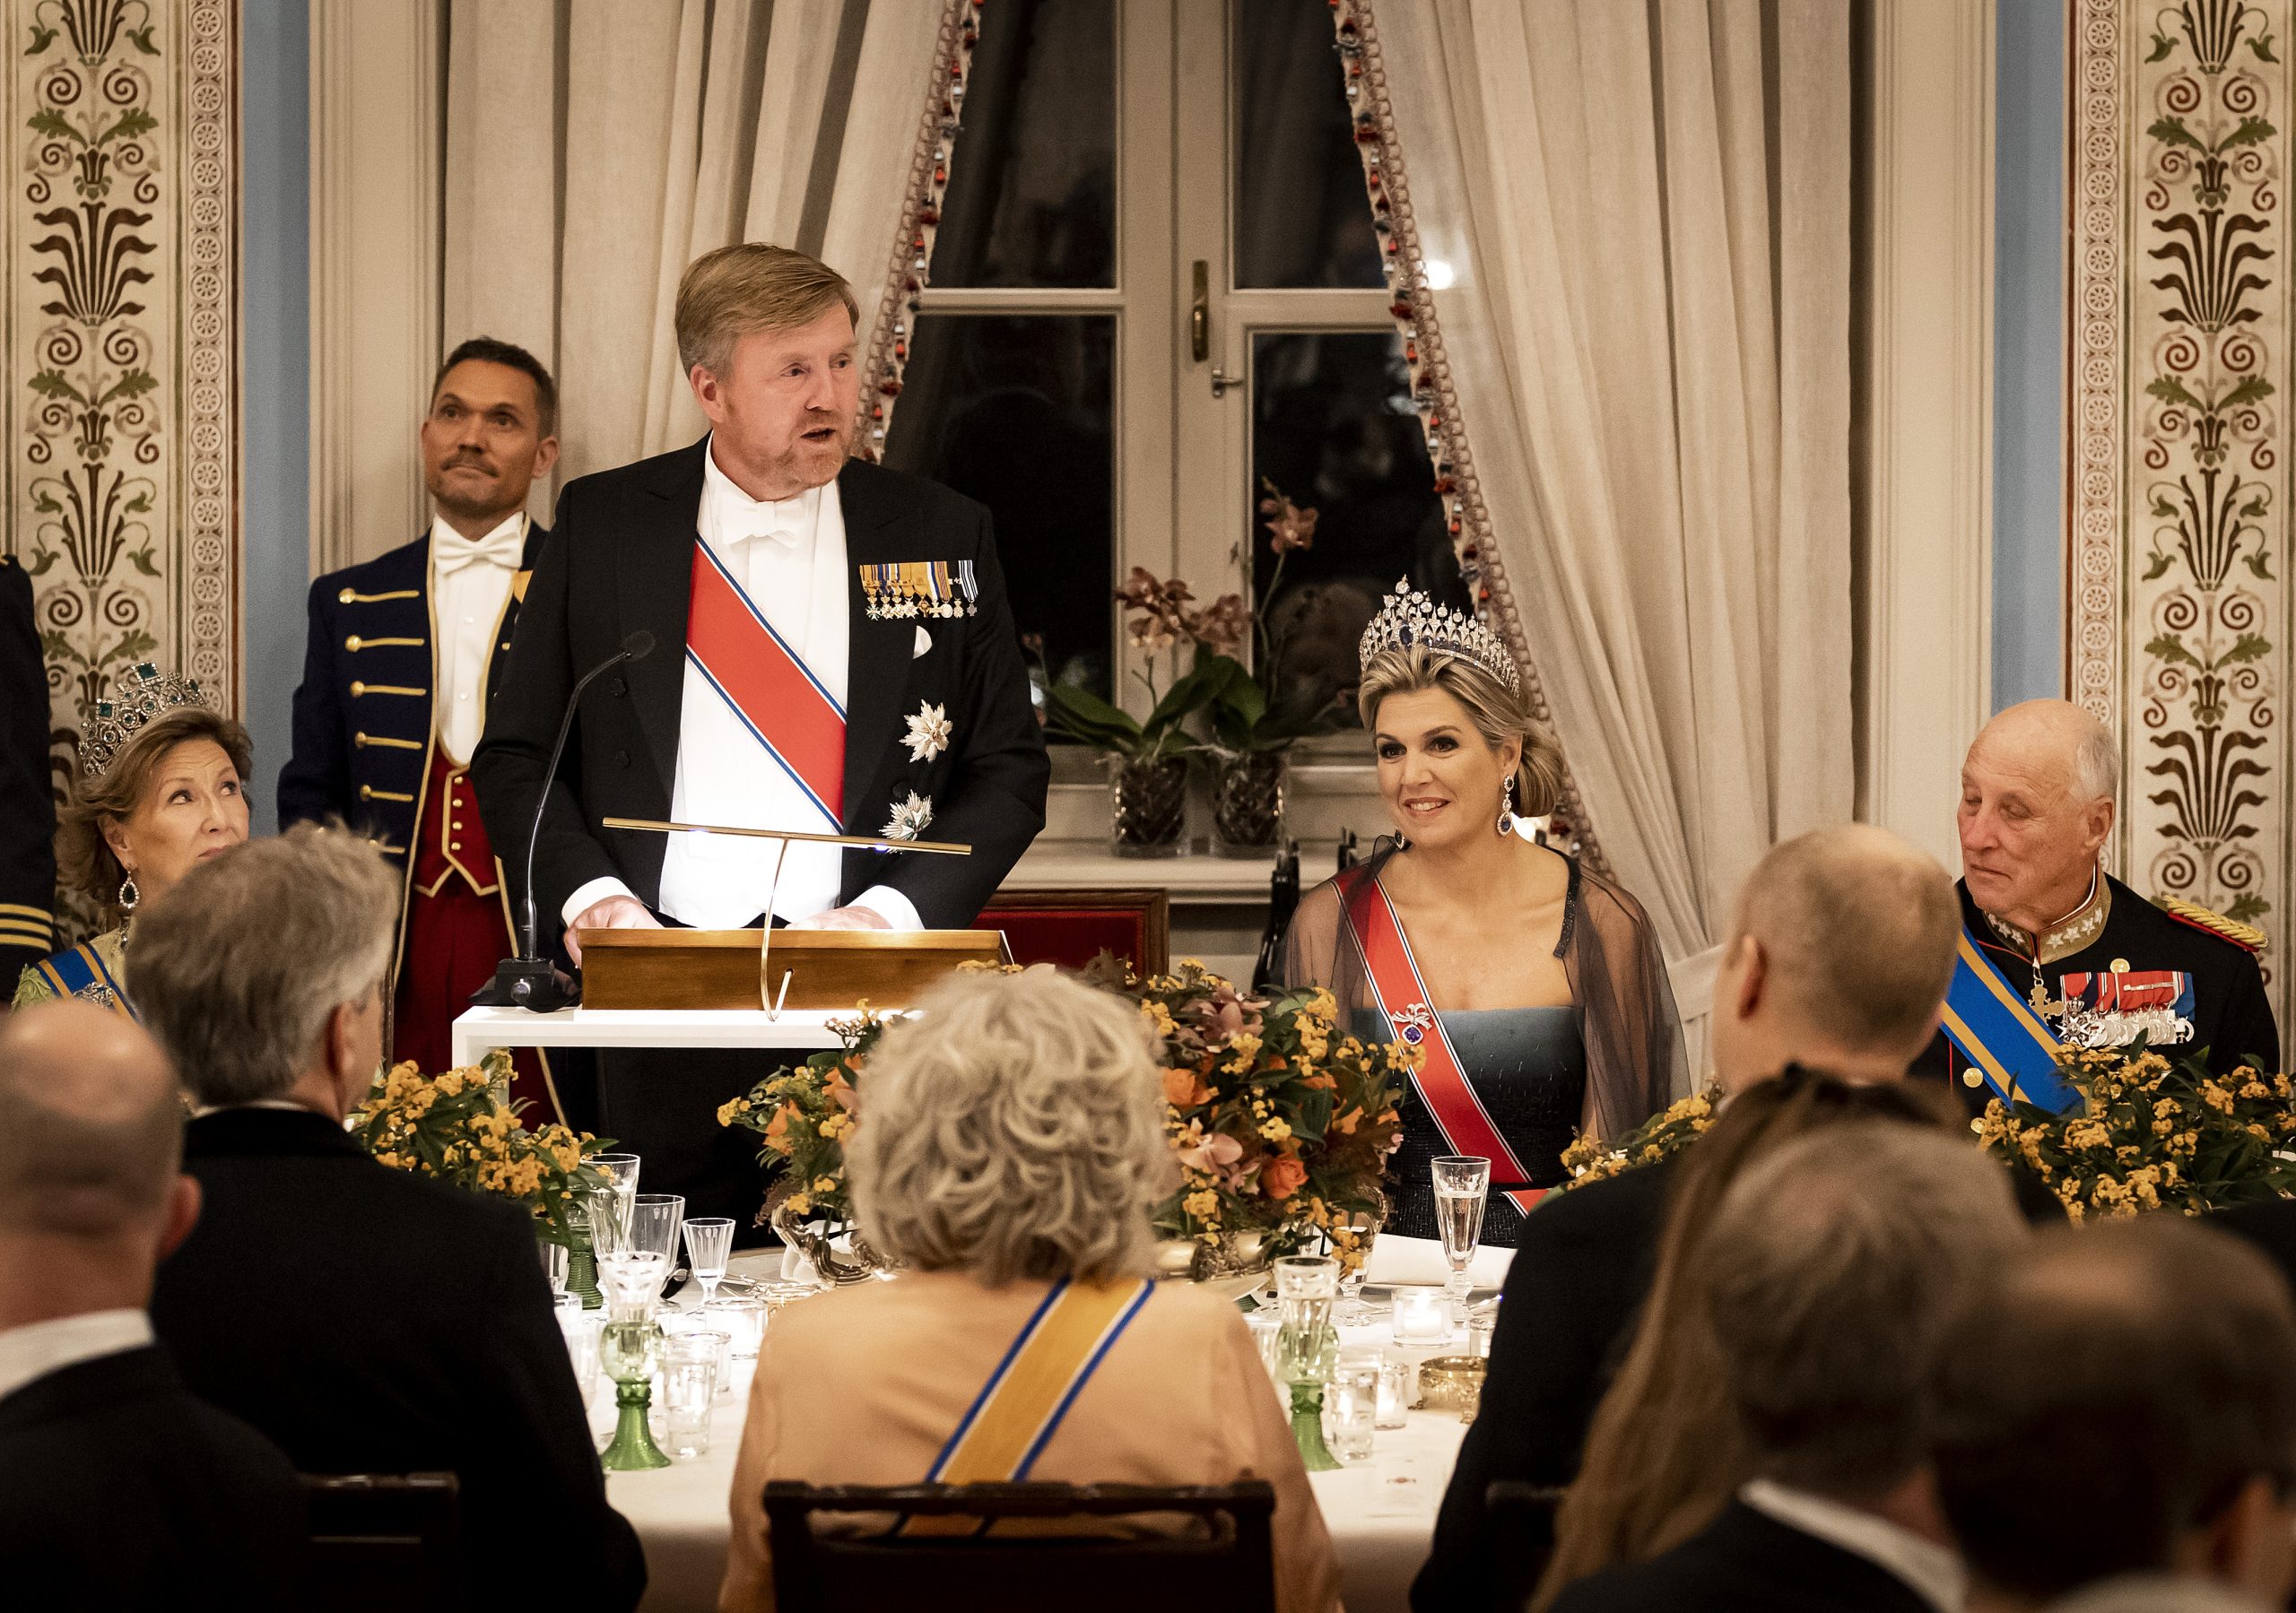 Staatsbezoek koningspaar aan Noorwegen